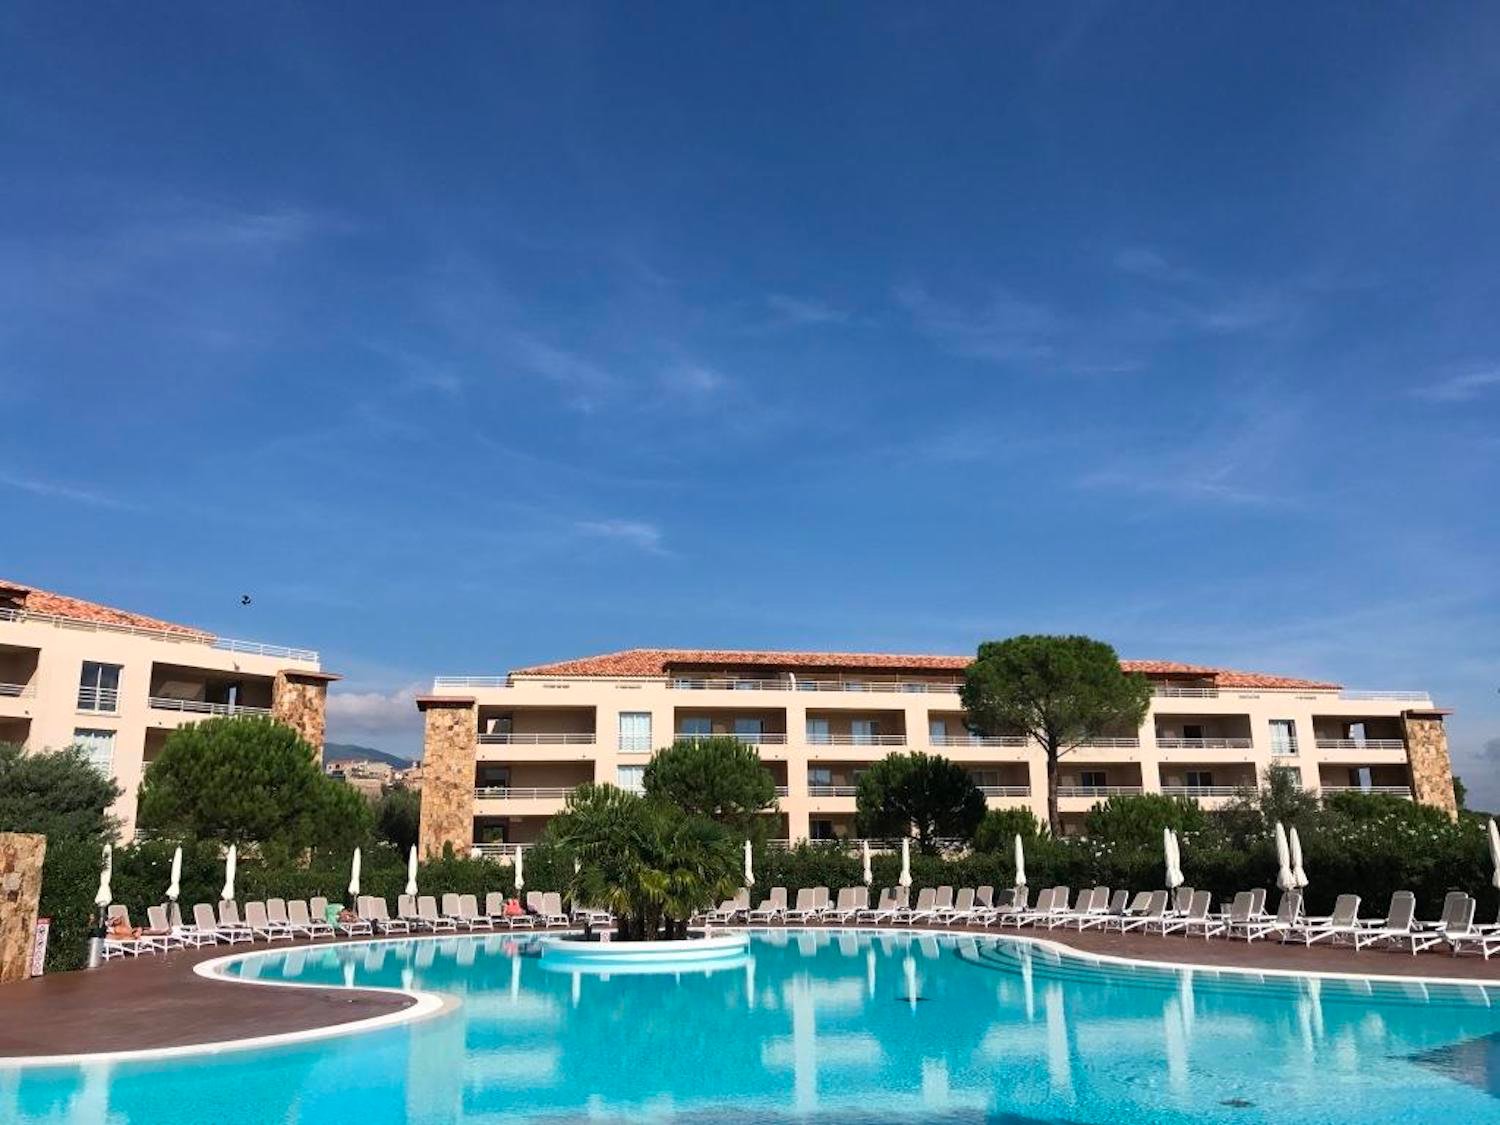 Location vacances appartement T3 Salina Bay Porto Vecchio Corse du sud proche port et plage 2 chambres 6 personnes résidence avec piscine